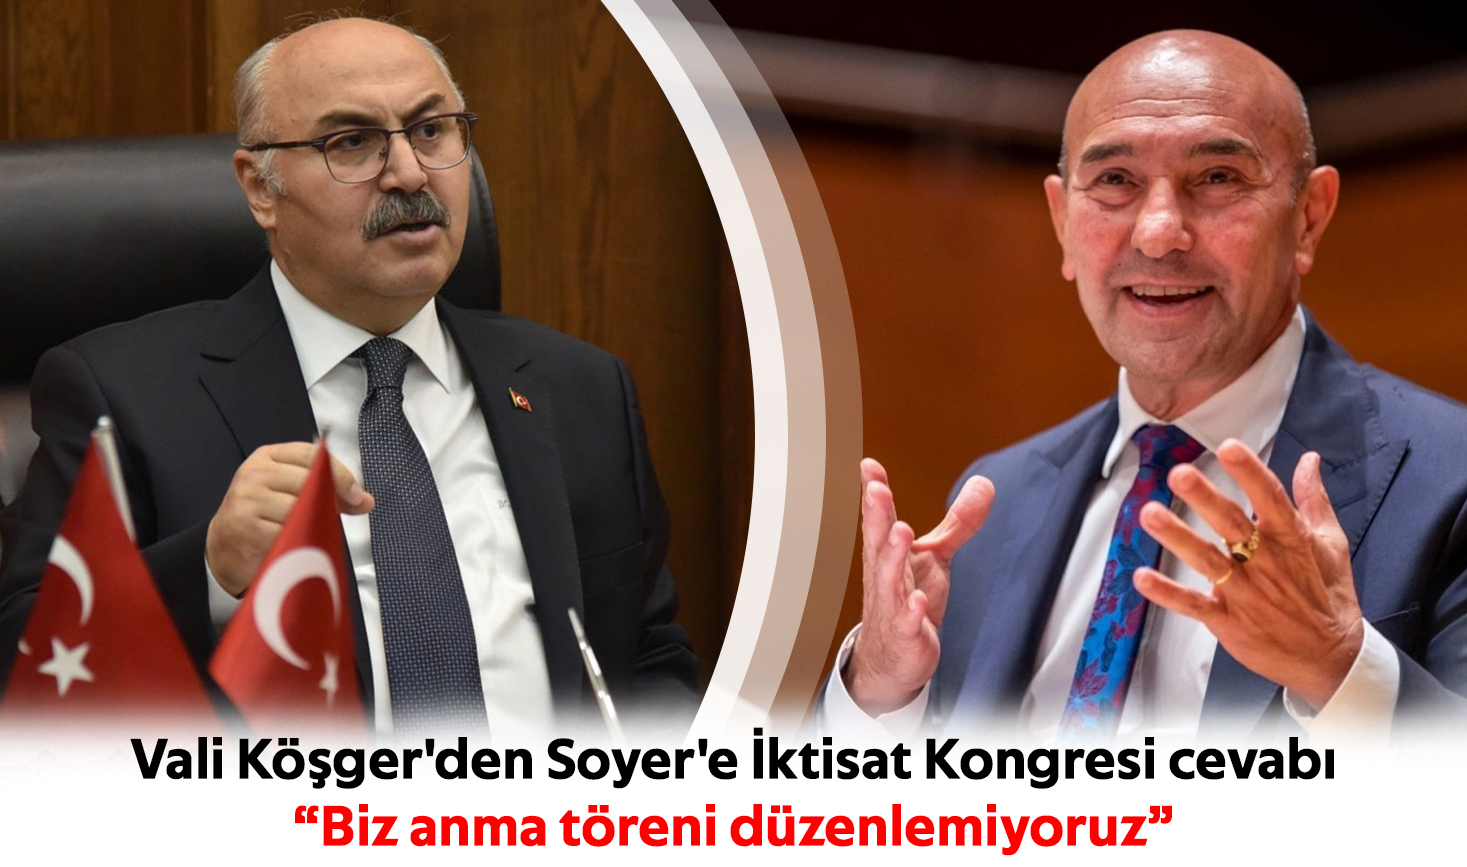 Vali Köşger'den Soyer'e İktisat Kongresi cevabı: “Biz anma töreni düzenlemiyoruz”